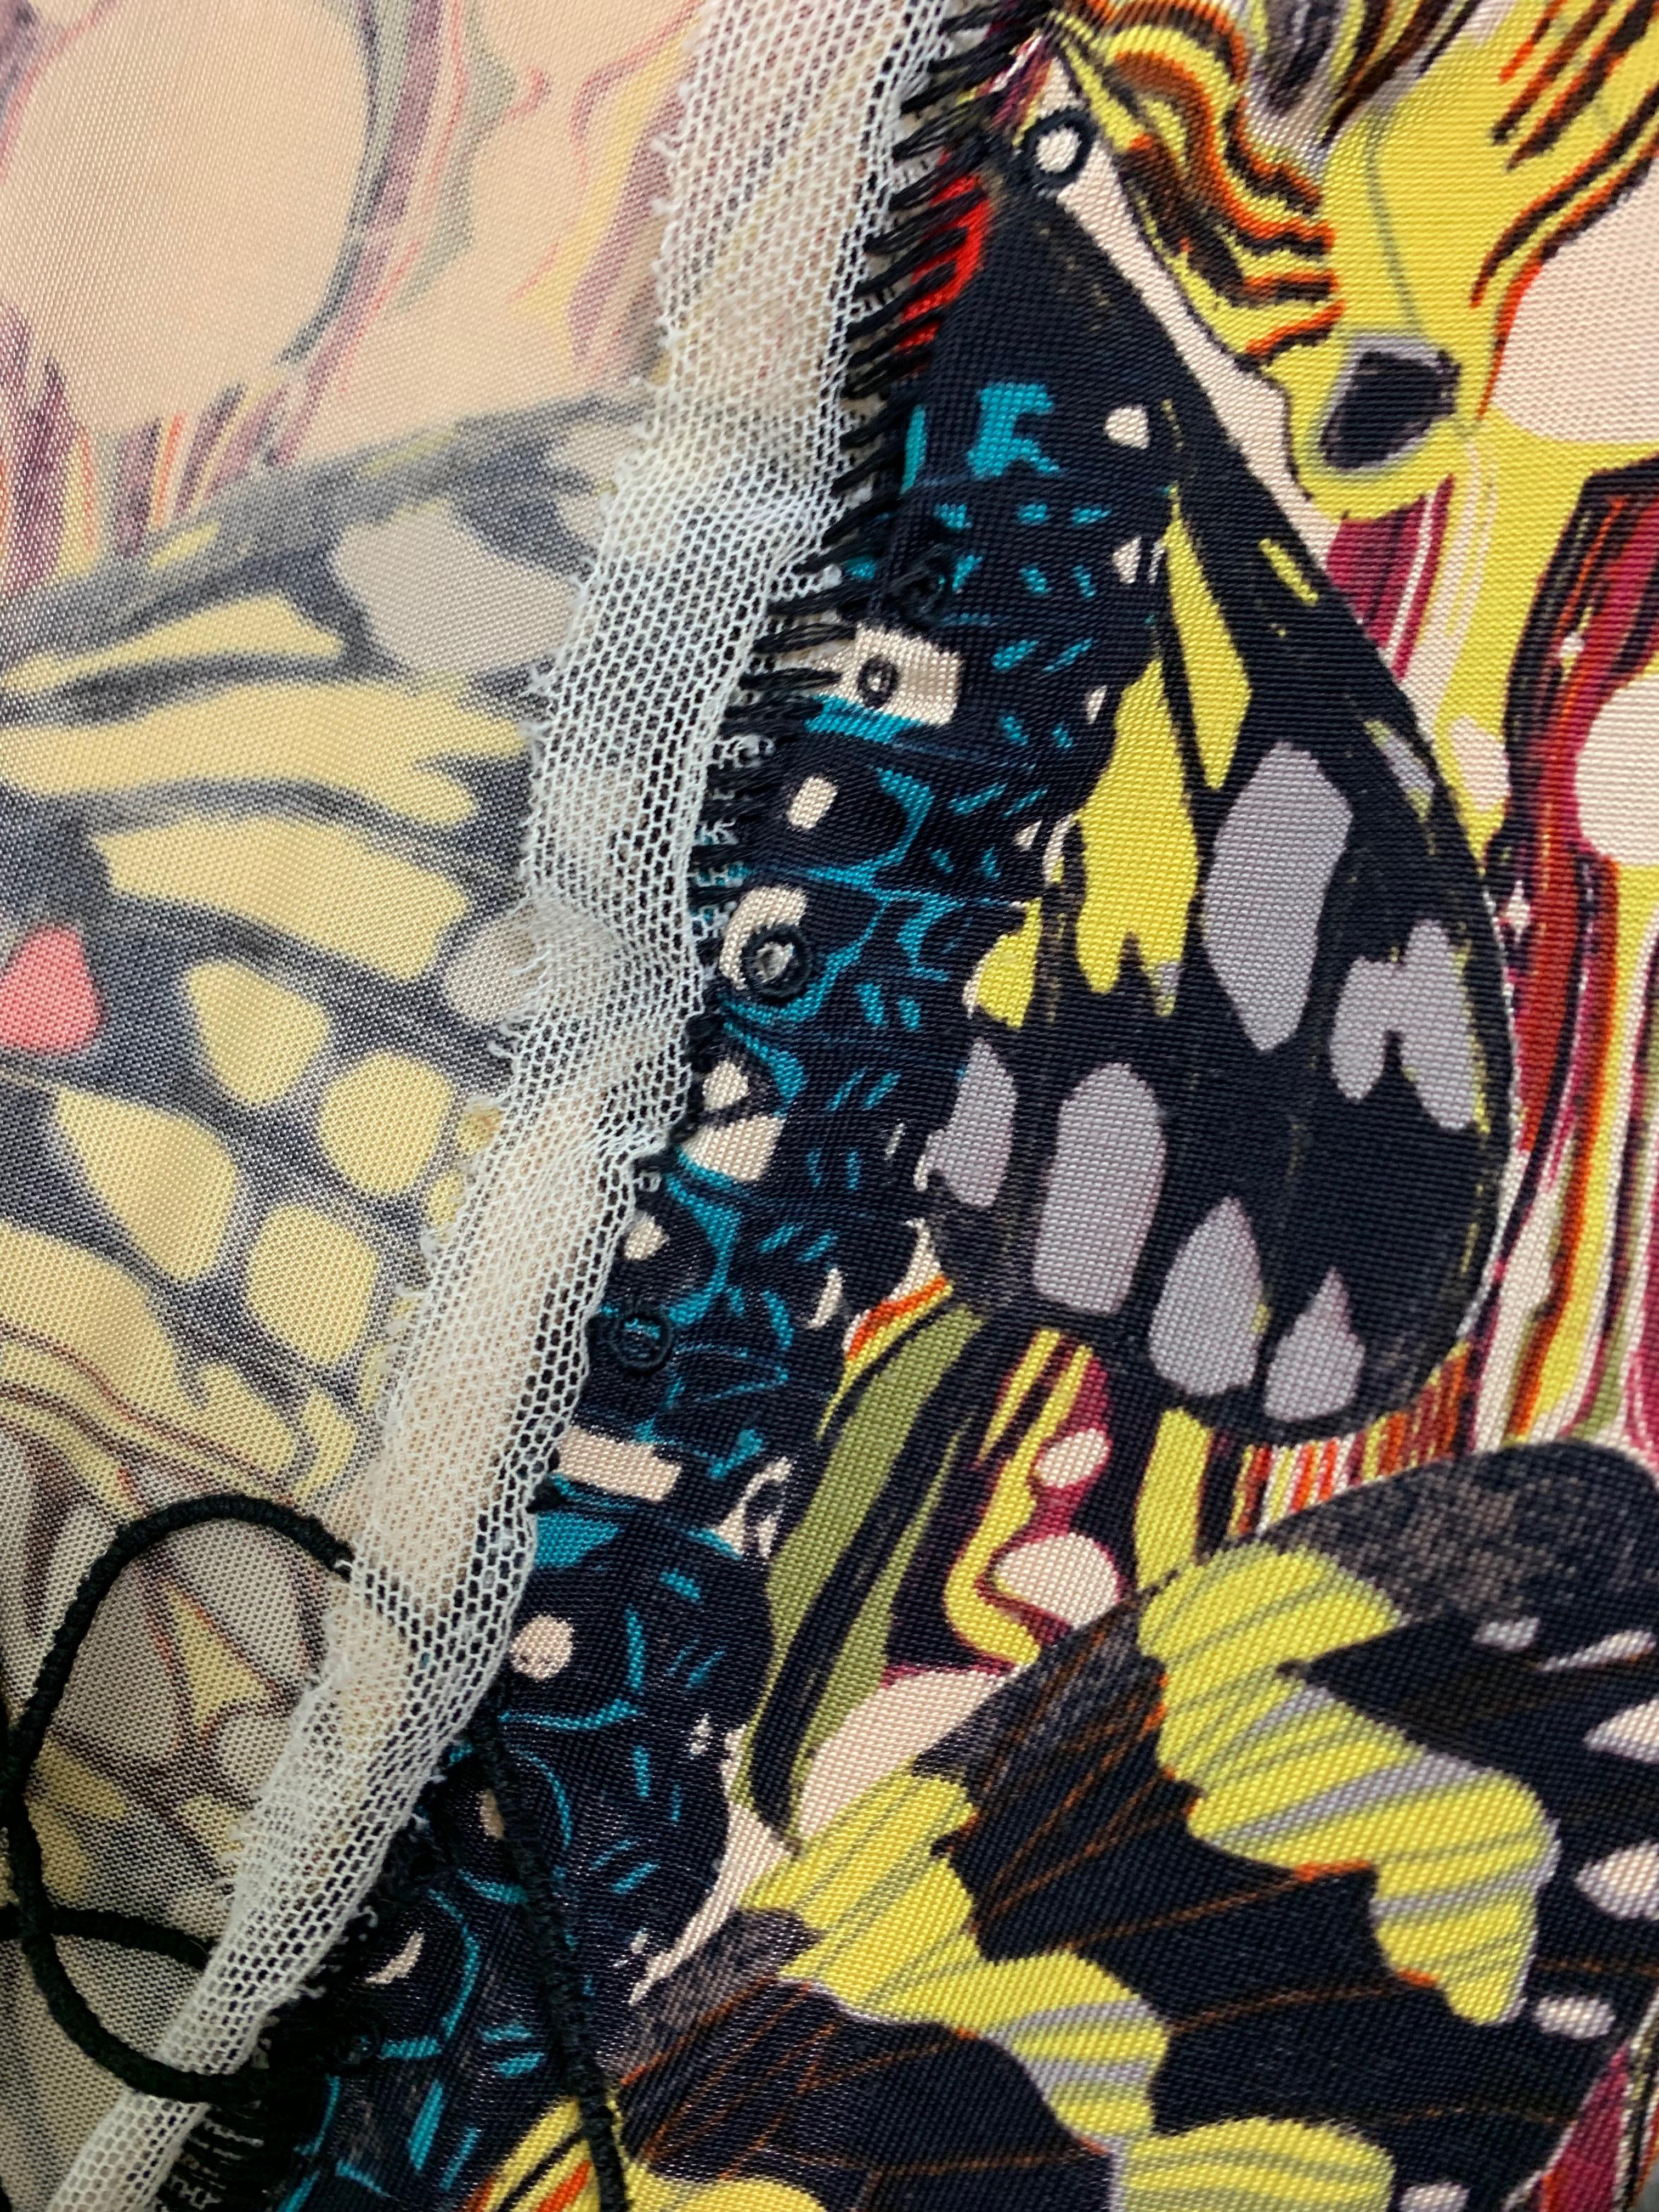 jean paul gaultier butterfly tie up dress